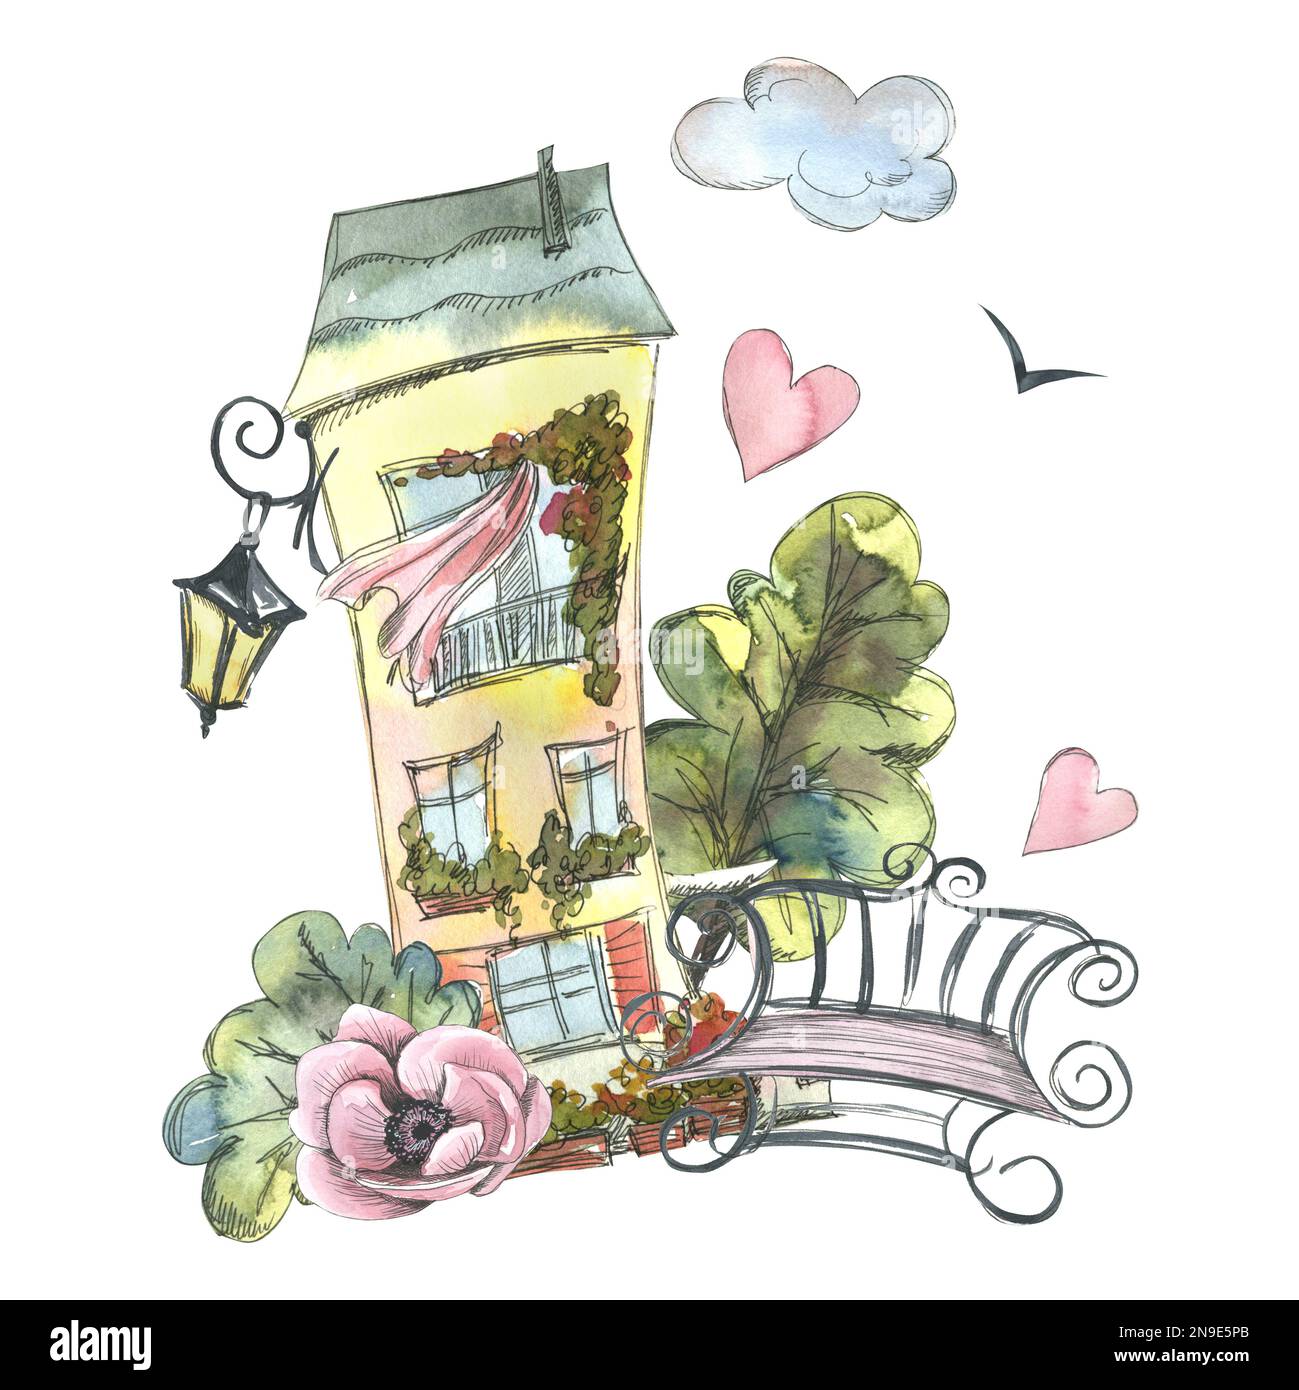 Jolie maison jaune, européenne avec un banc, une lanterne, des fleurs d'anémones, des arbres, des nuages et des coeurs. Illustration aquarelle. Composition de PARIS Banque D'Images